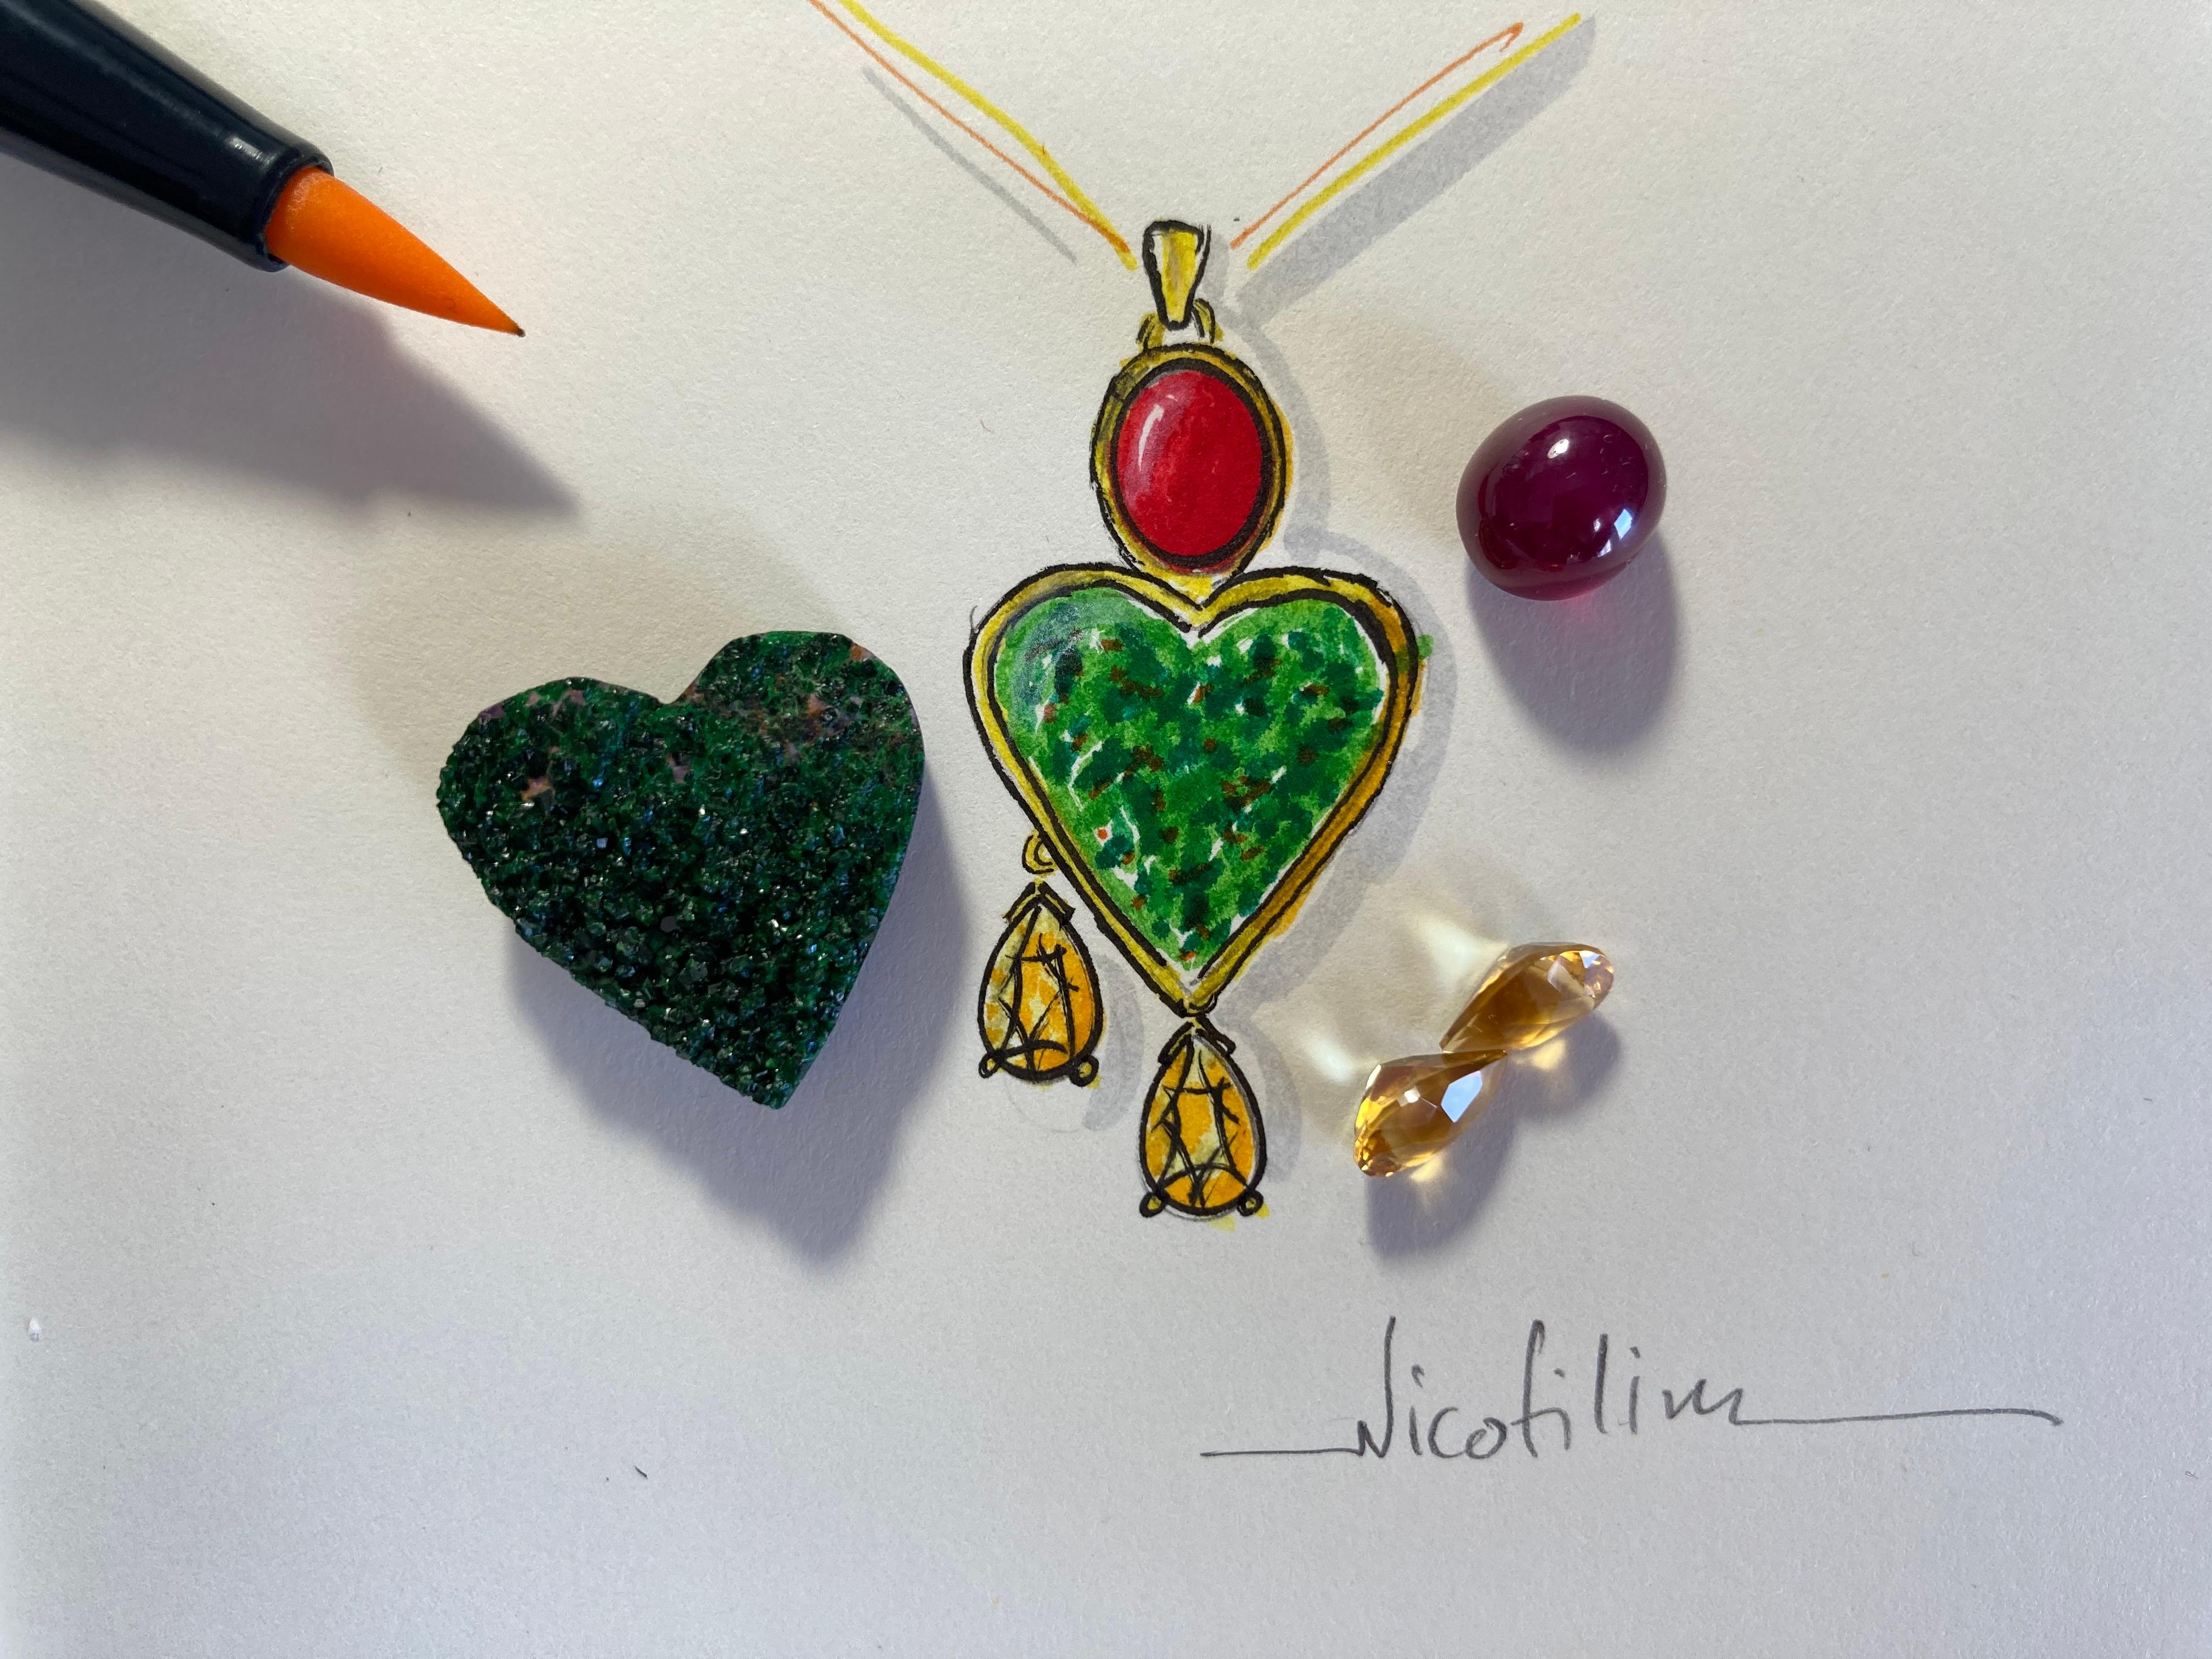 Grünes Herz - Nicofilimon 2021
bei dieser einzigartigen Kreation von Nicofilimon haben Sie das Privileg, eine der vier Variationen des Designs zu wählen und es wird speziell für Sie handgefertigt.
Dieses Kunstwerk wird aus 18 kt Gelbgold, grünem